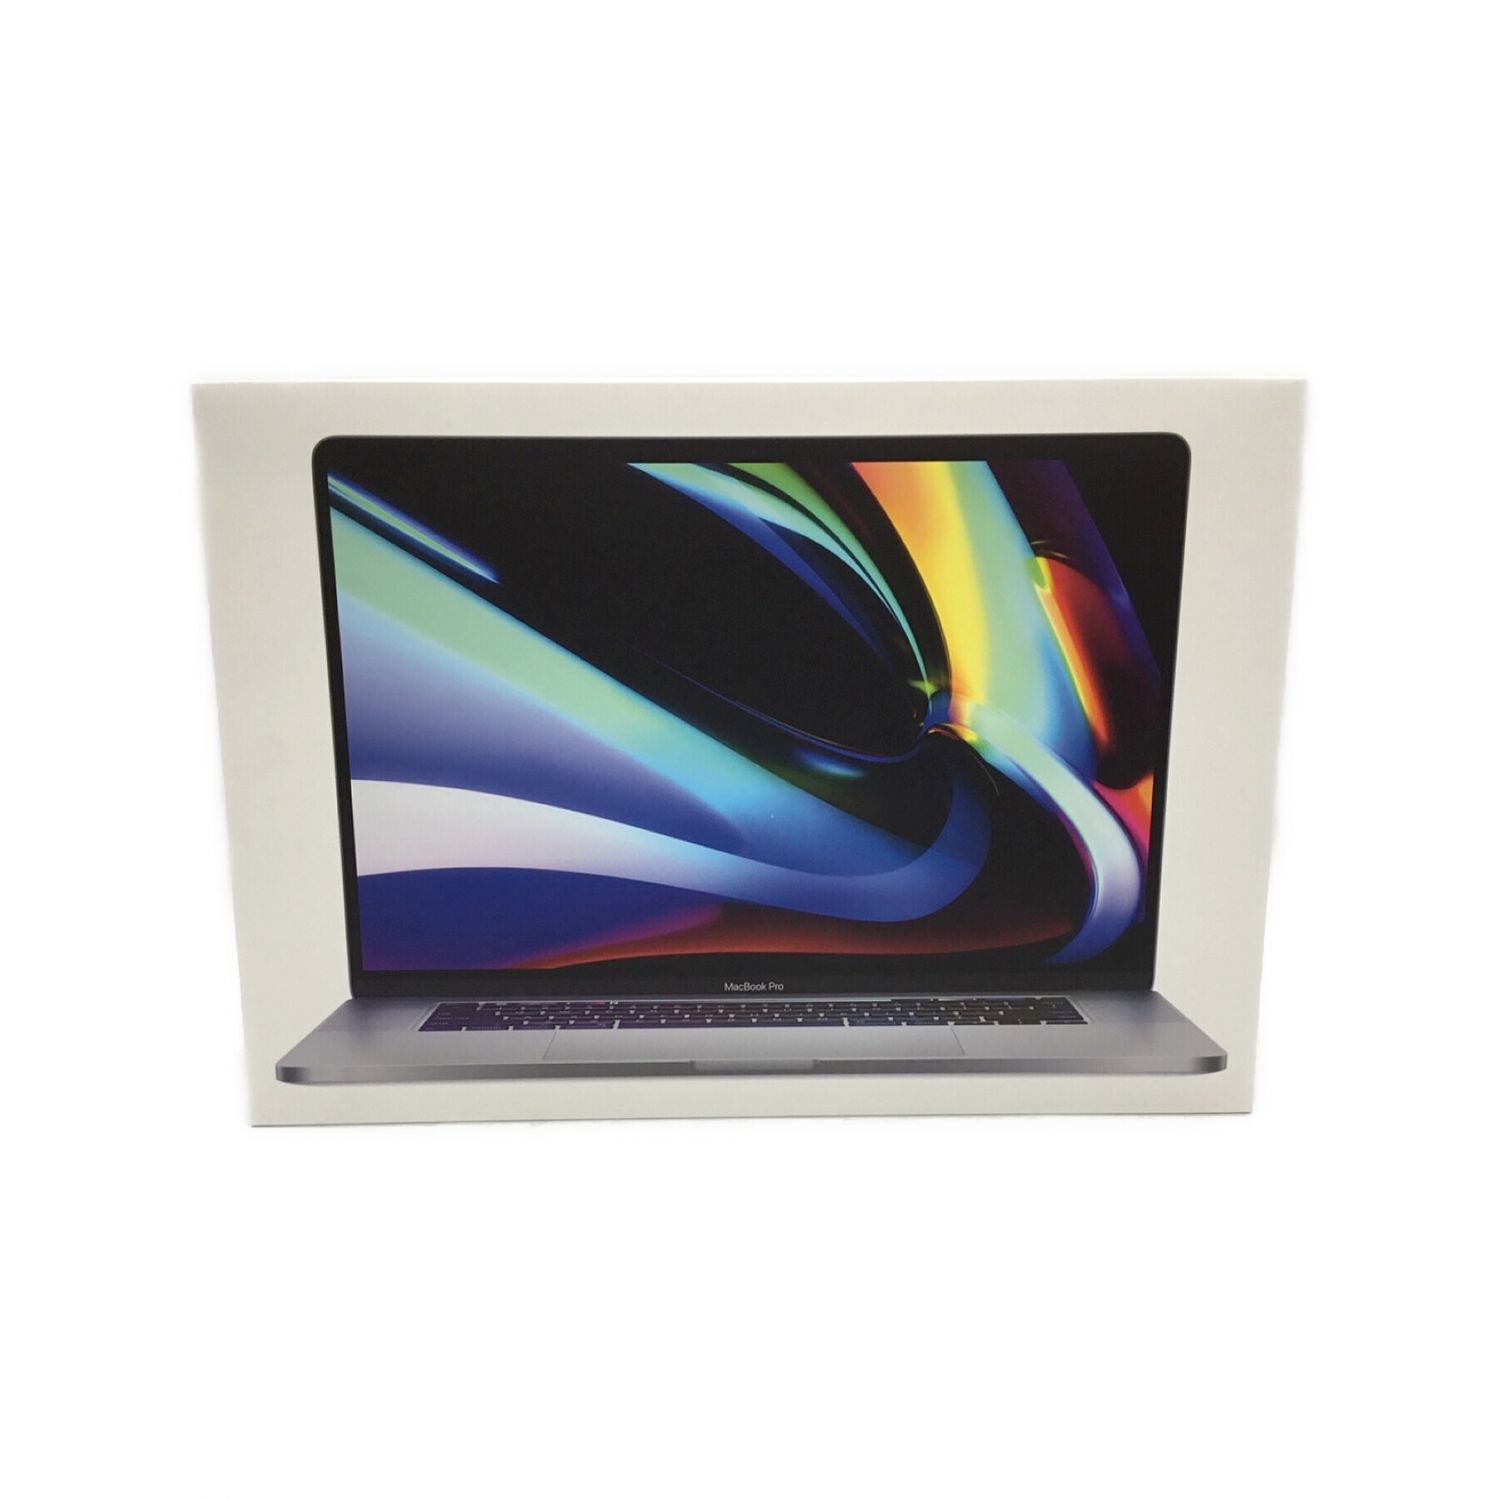 Apple (アップル) MacBook Pro 2019年モデル A2141 16インチ Mac OS 